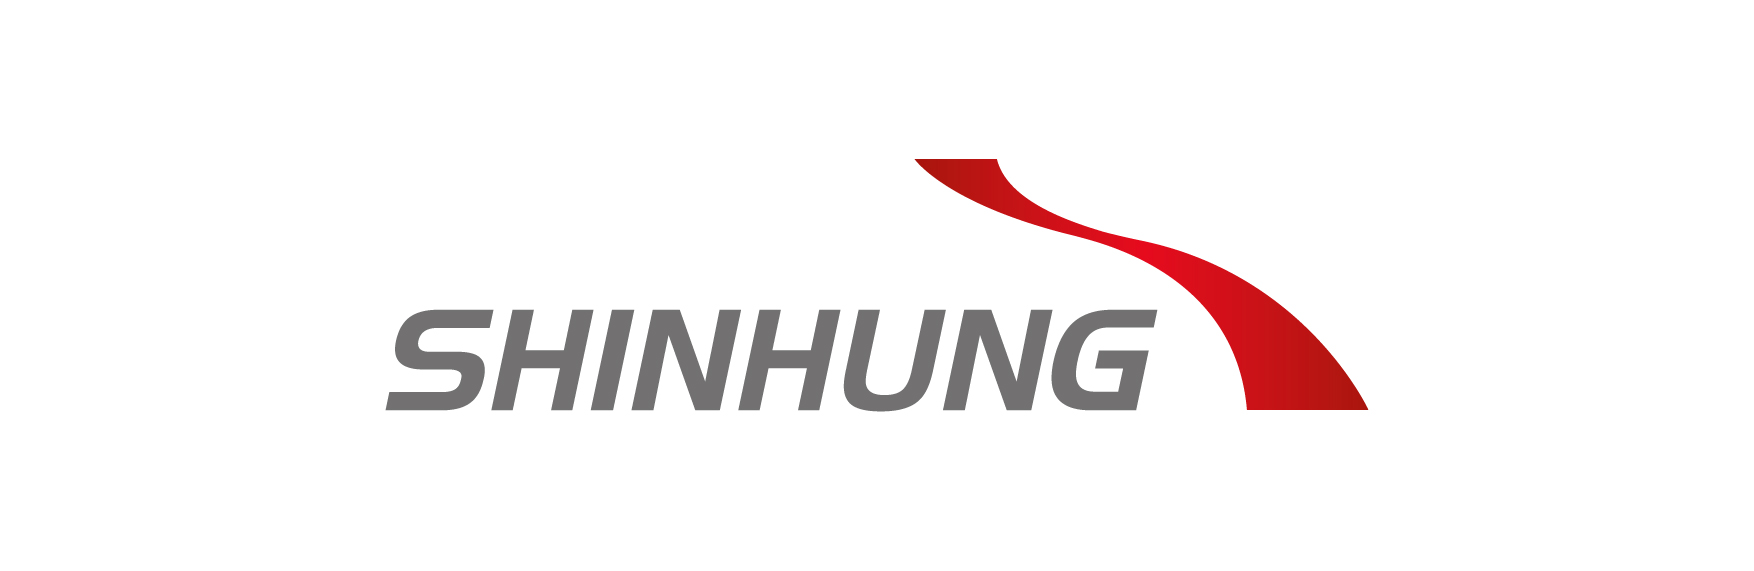 Shinhung logo